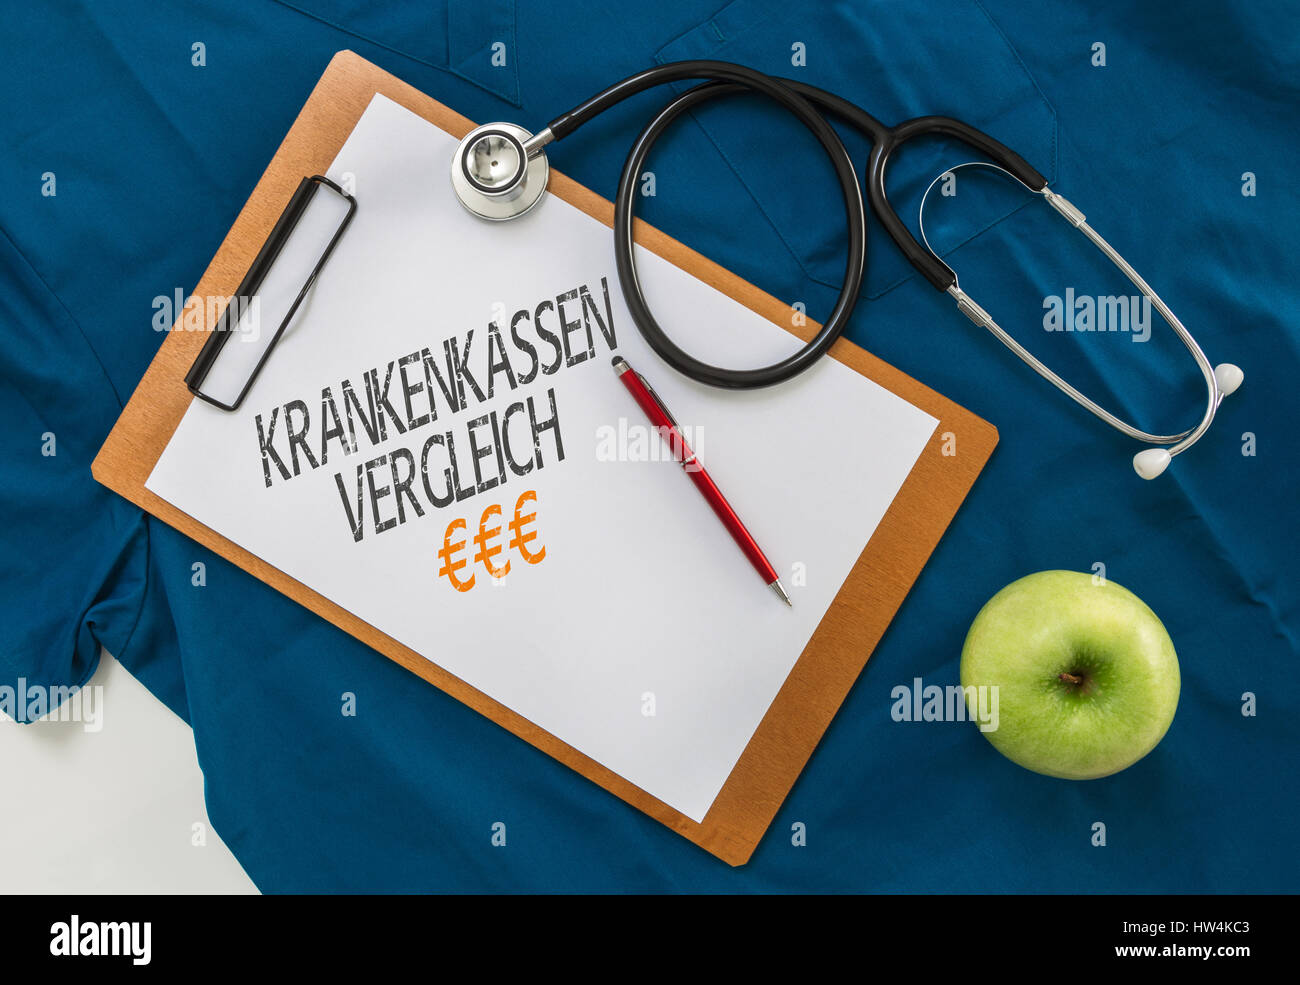 Krankenkassen Vergleich (in german Health insurance comparison) Clipboard with stethoscope. Stock Photo